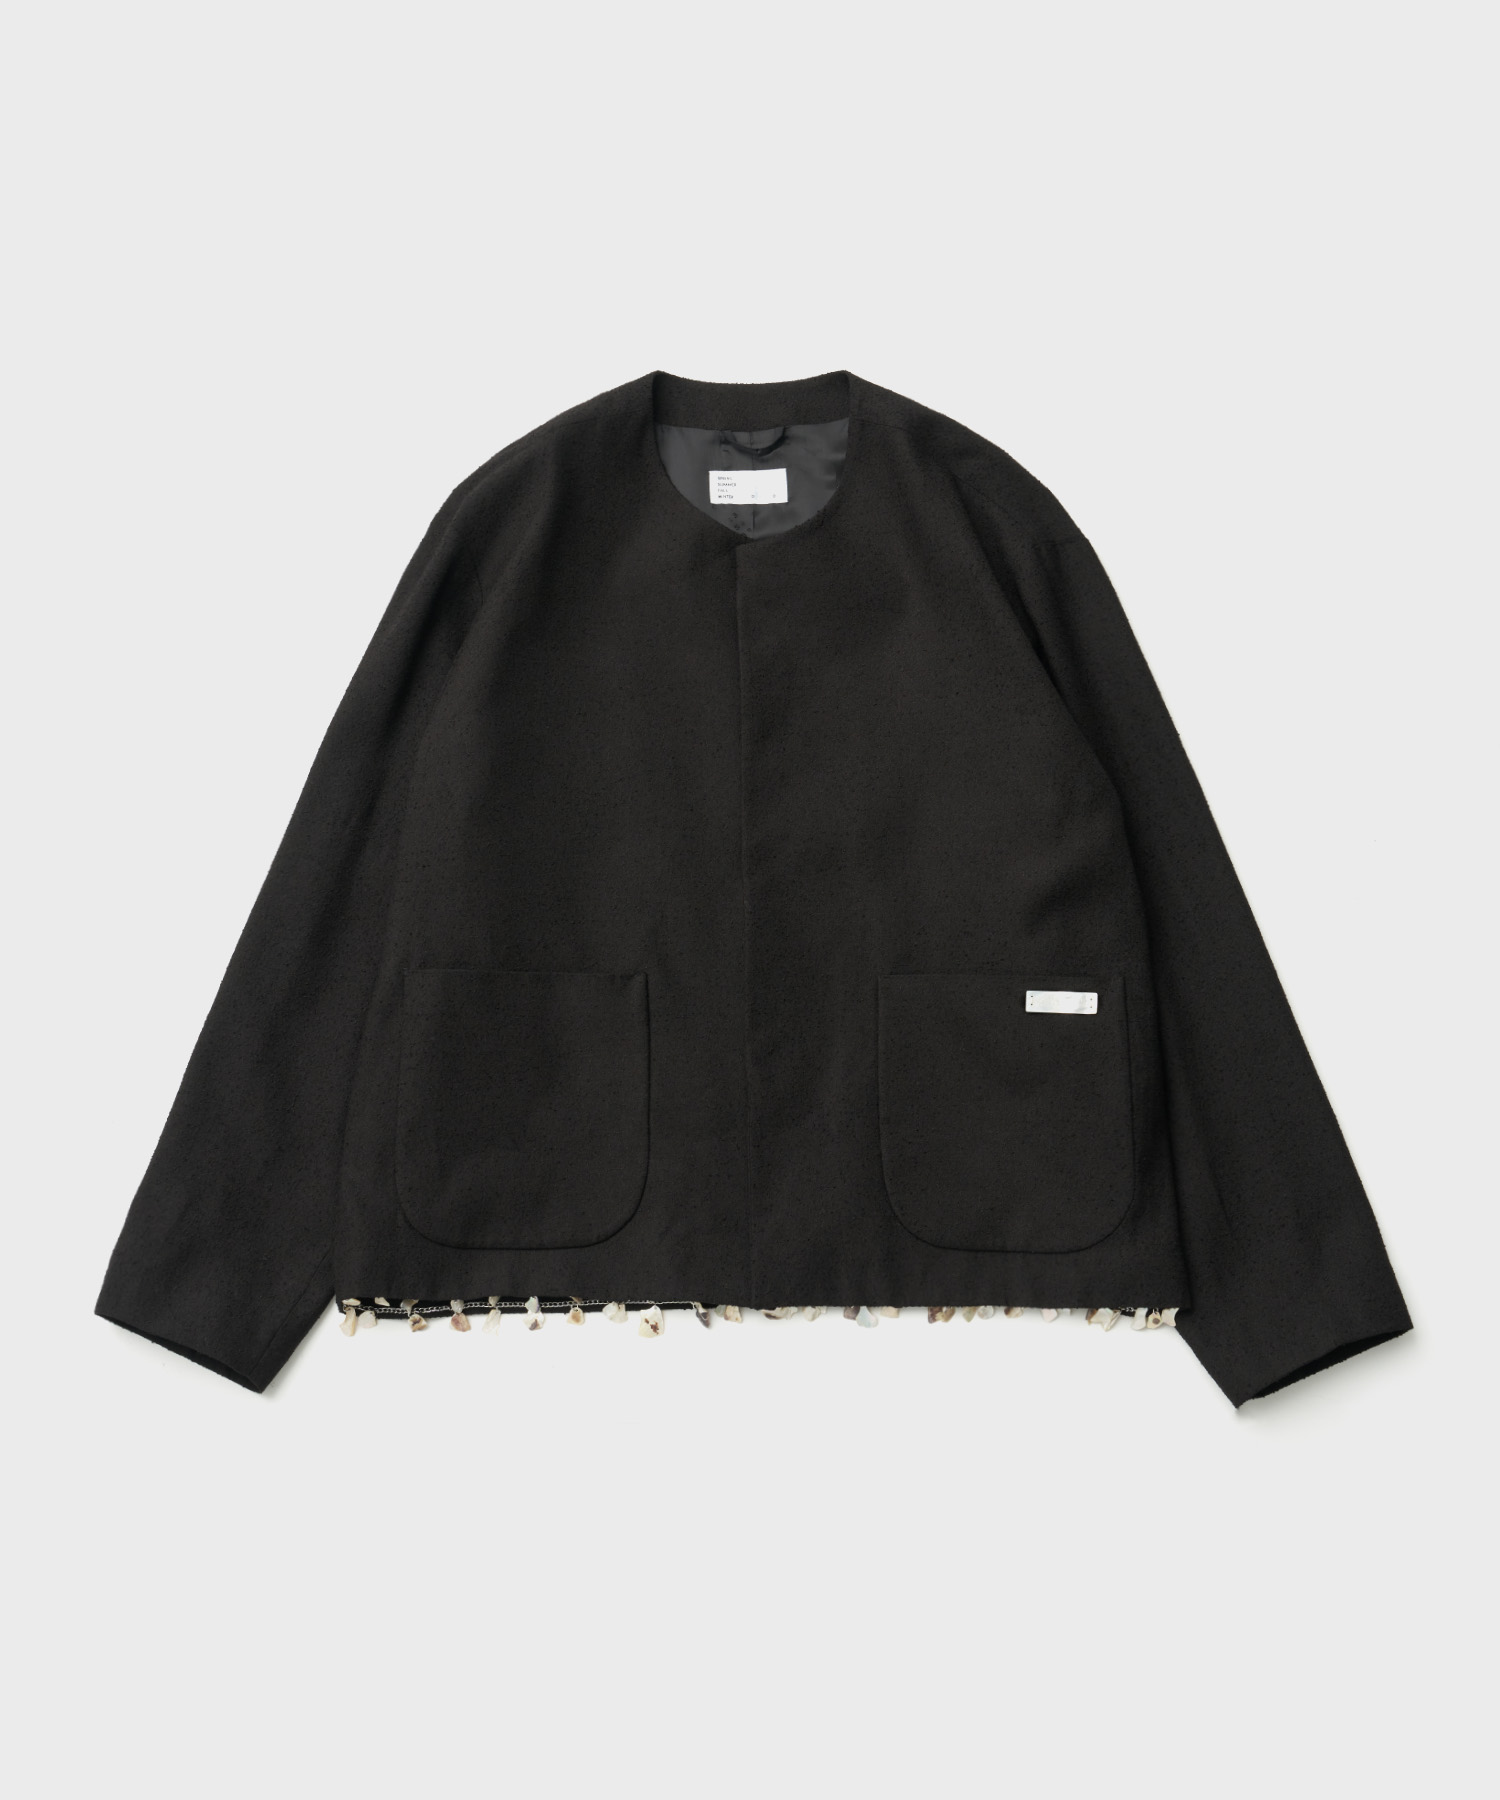 Cadena Cardigan Coat (Black)